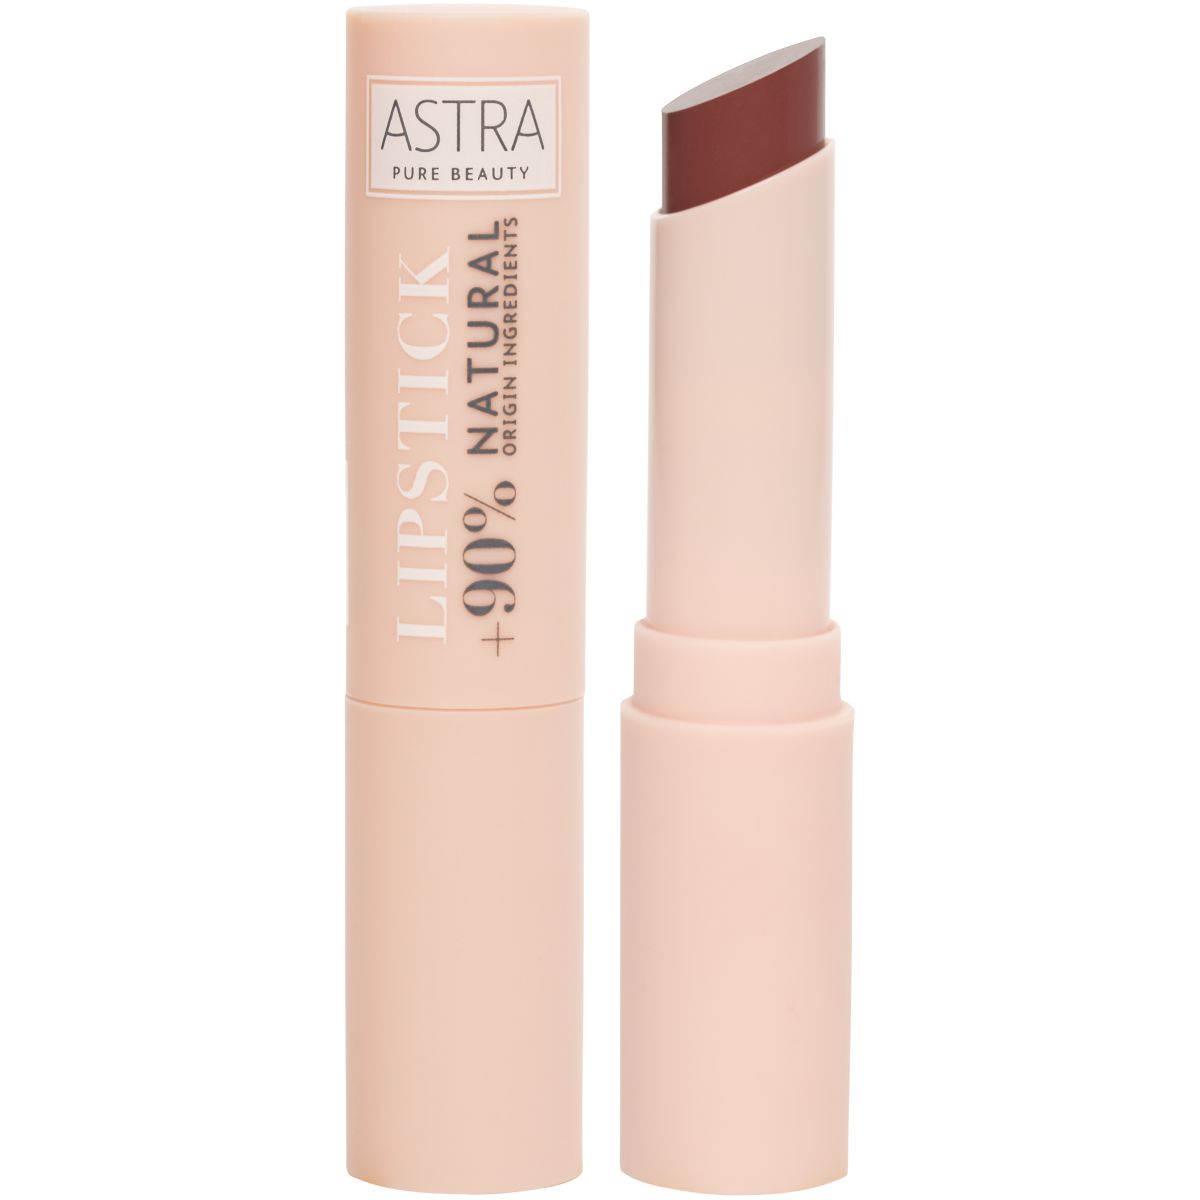 Astra Pure Beauty Lipstick Vegano al 95% di Origine Naturale 02 | RossoLacca